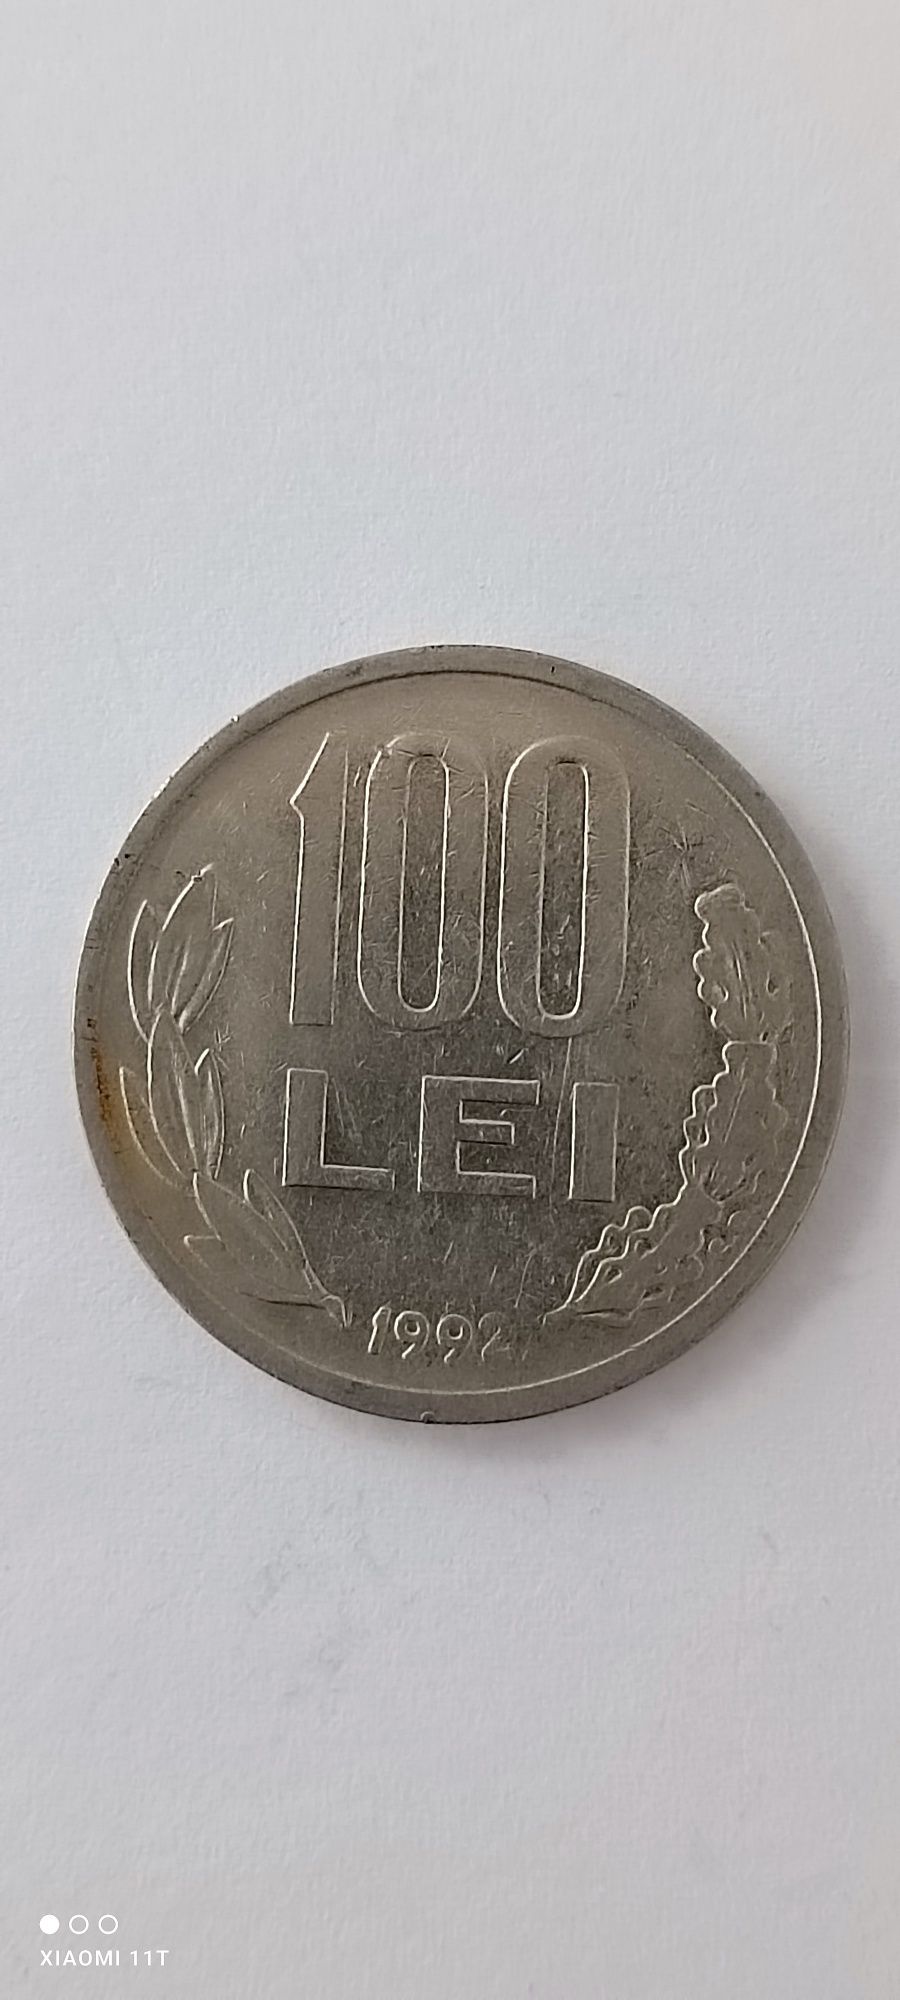 Monedă cu chipul lui Mihai Viteazu, din 1992